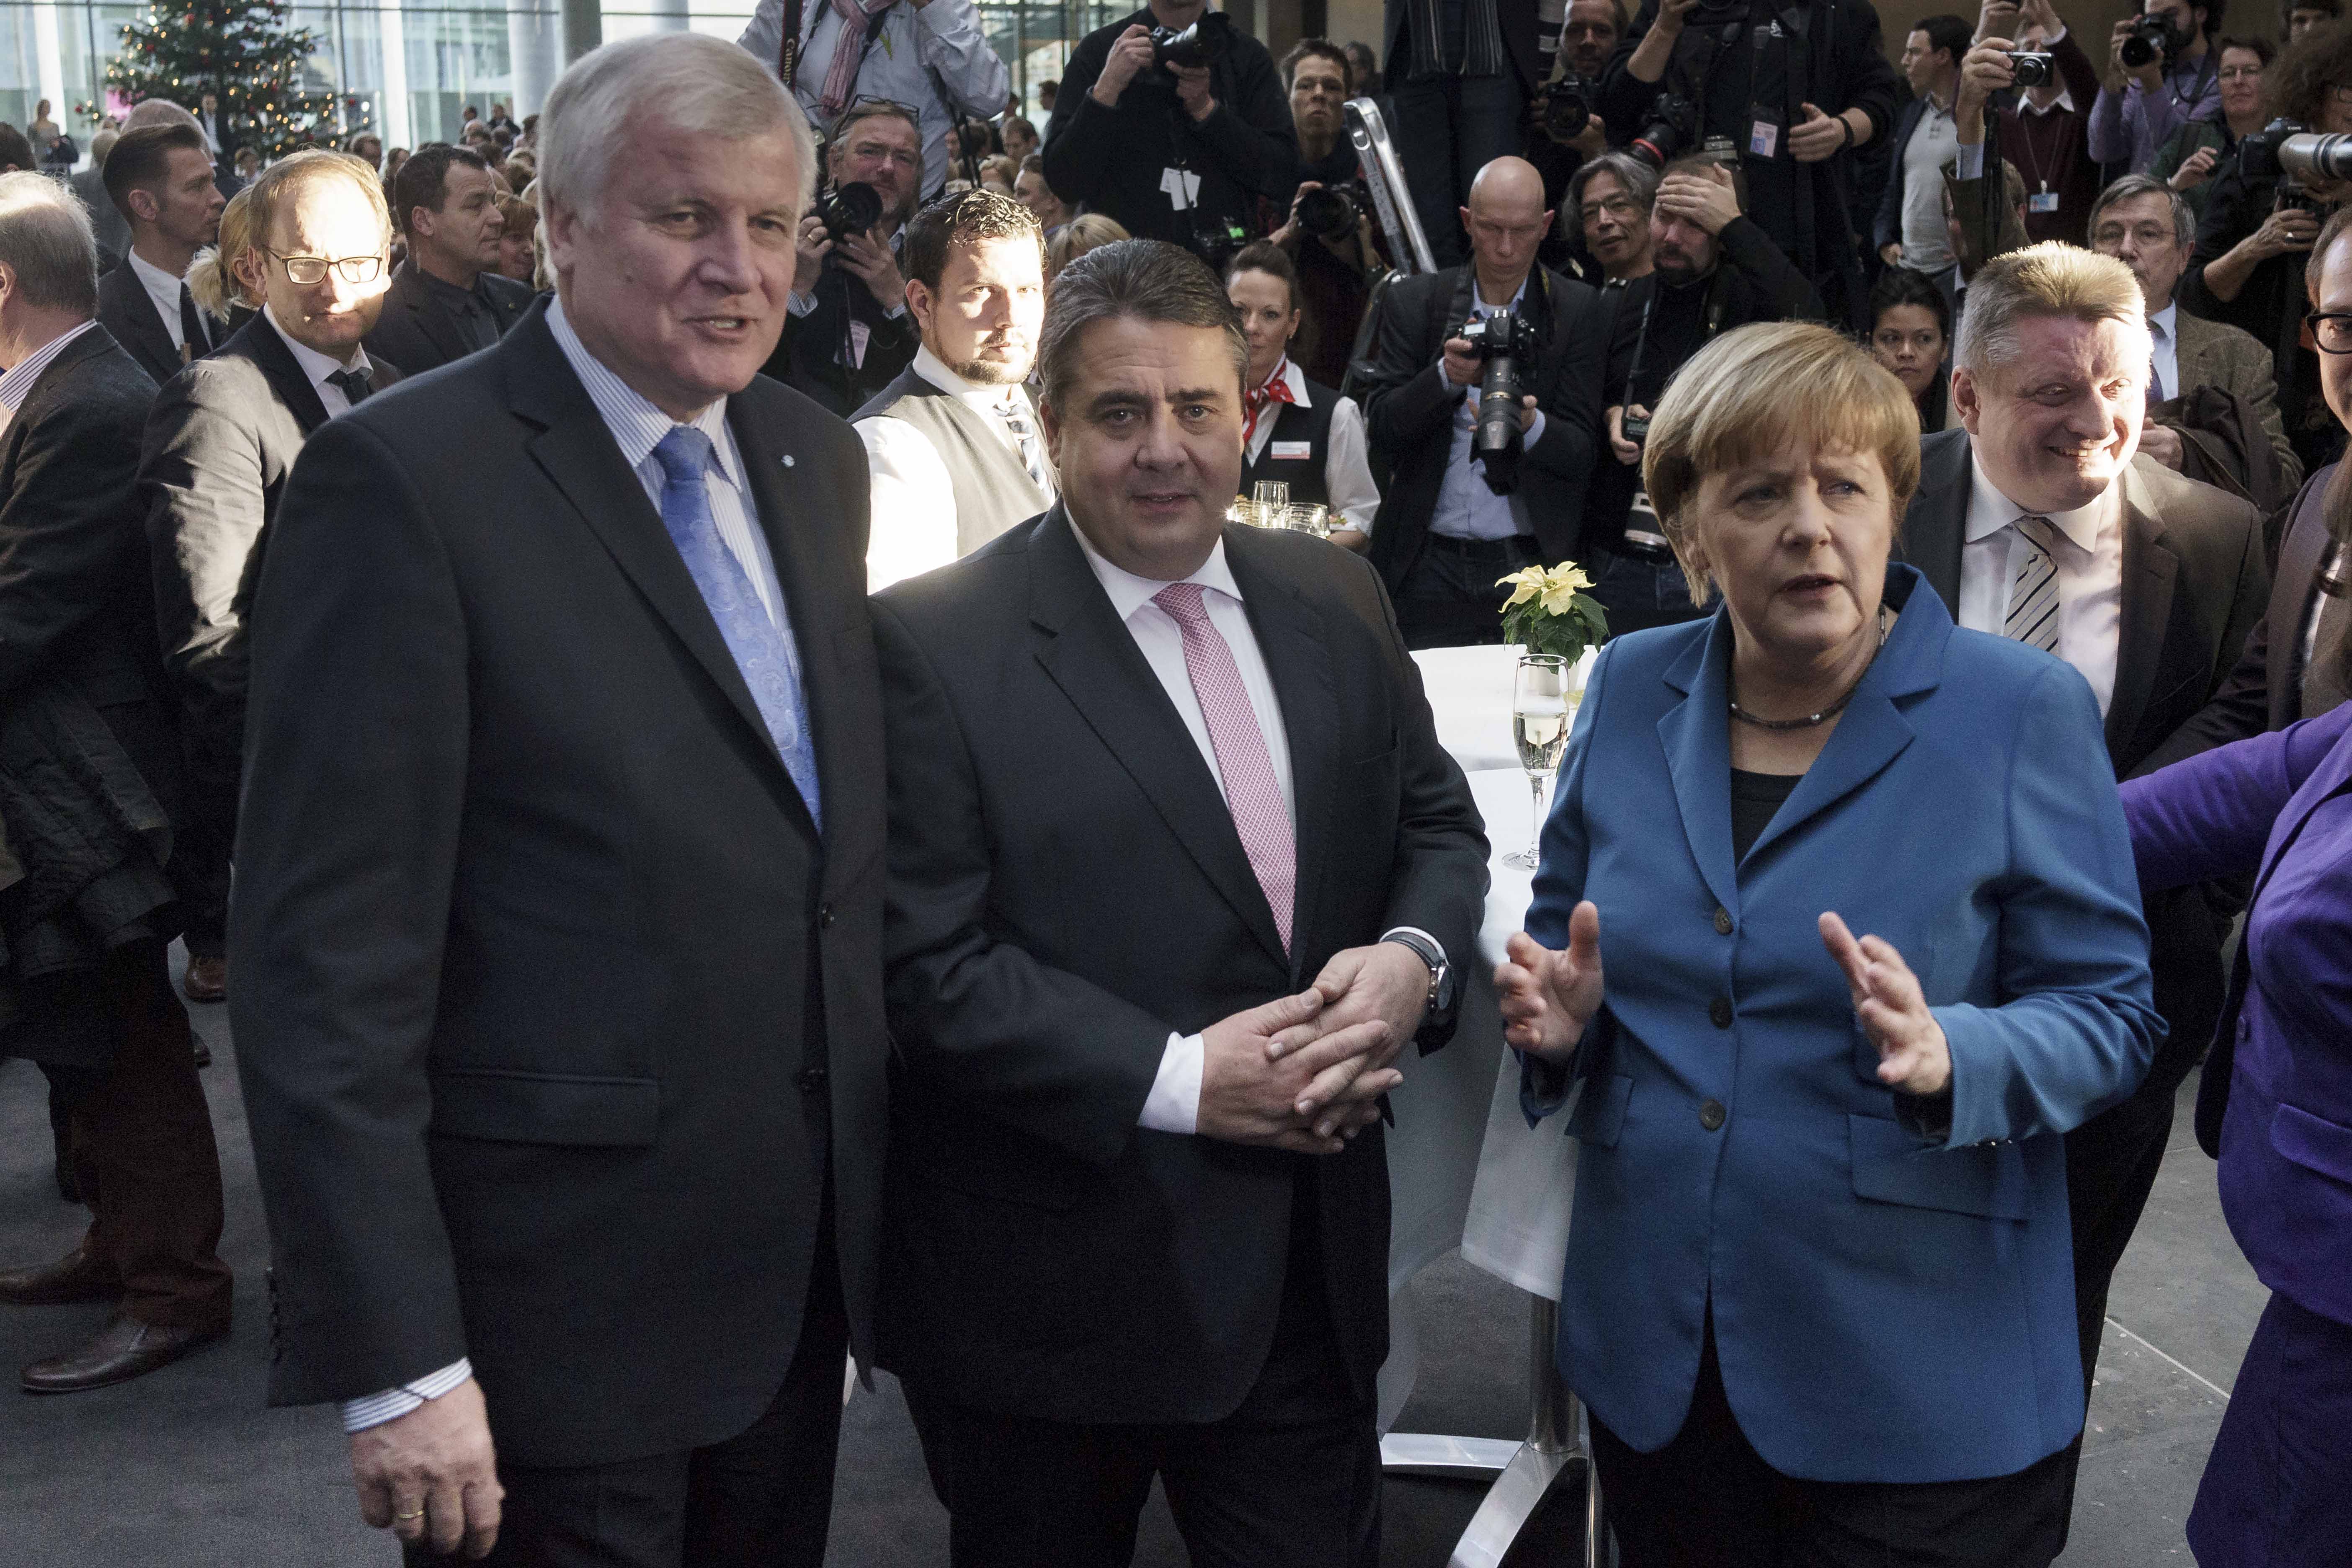 Gemeinsames Treffen von Kanzlerin Merkel, Sigmar Gabriel und Horst Seehofer am Sonntag